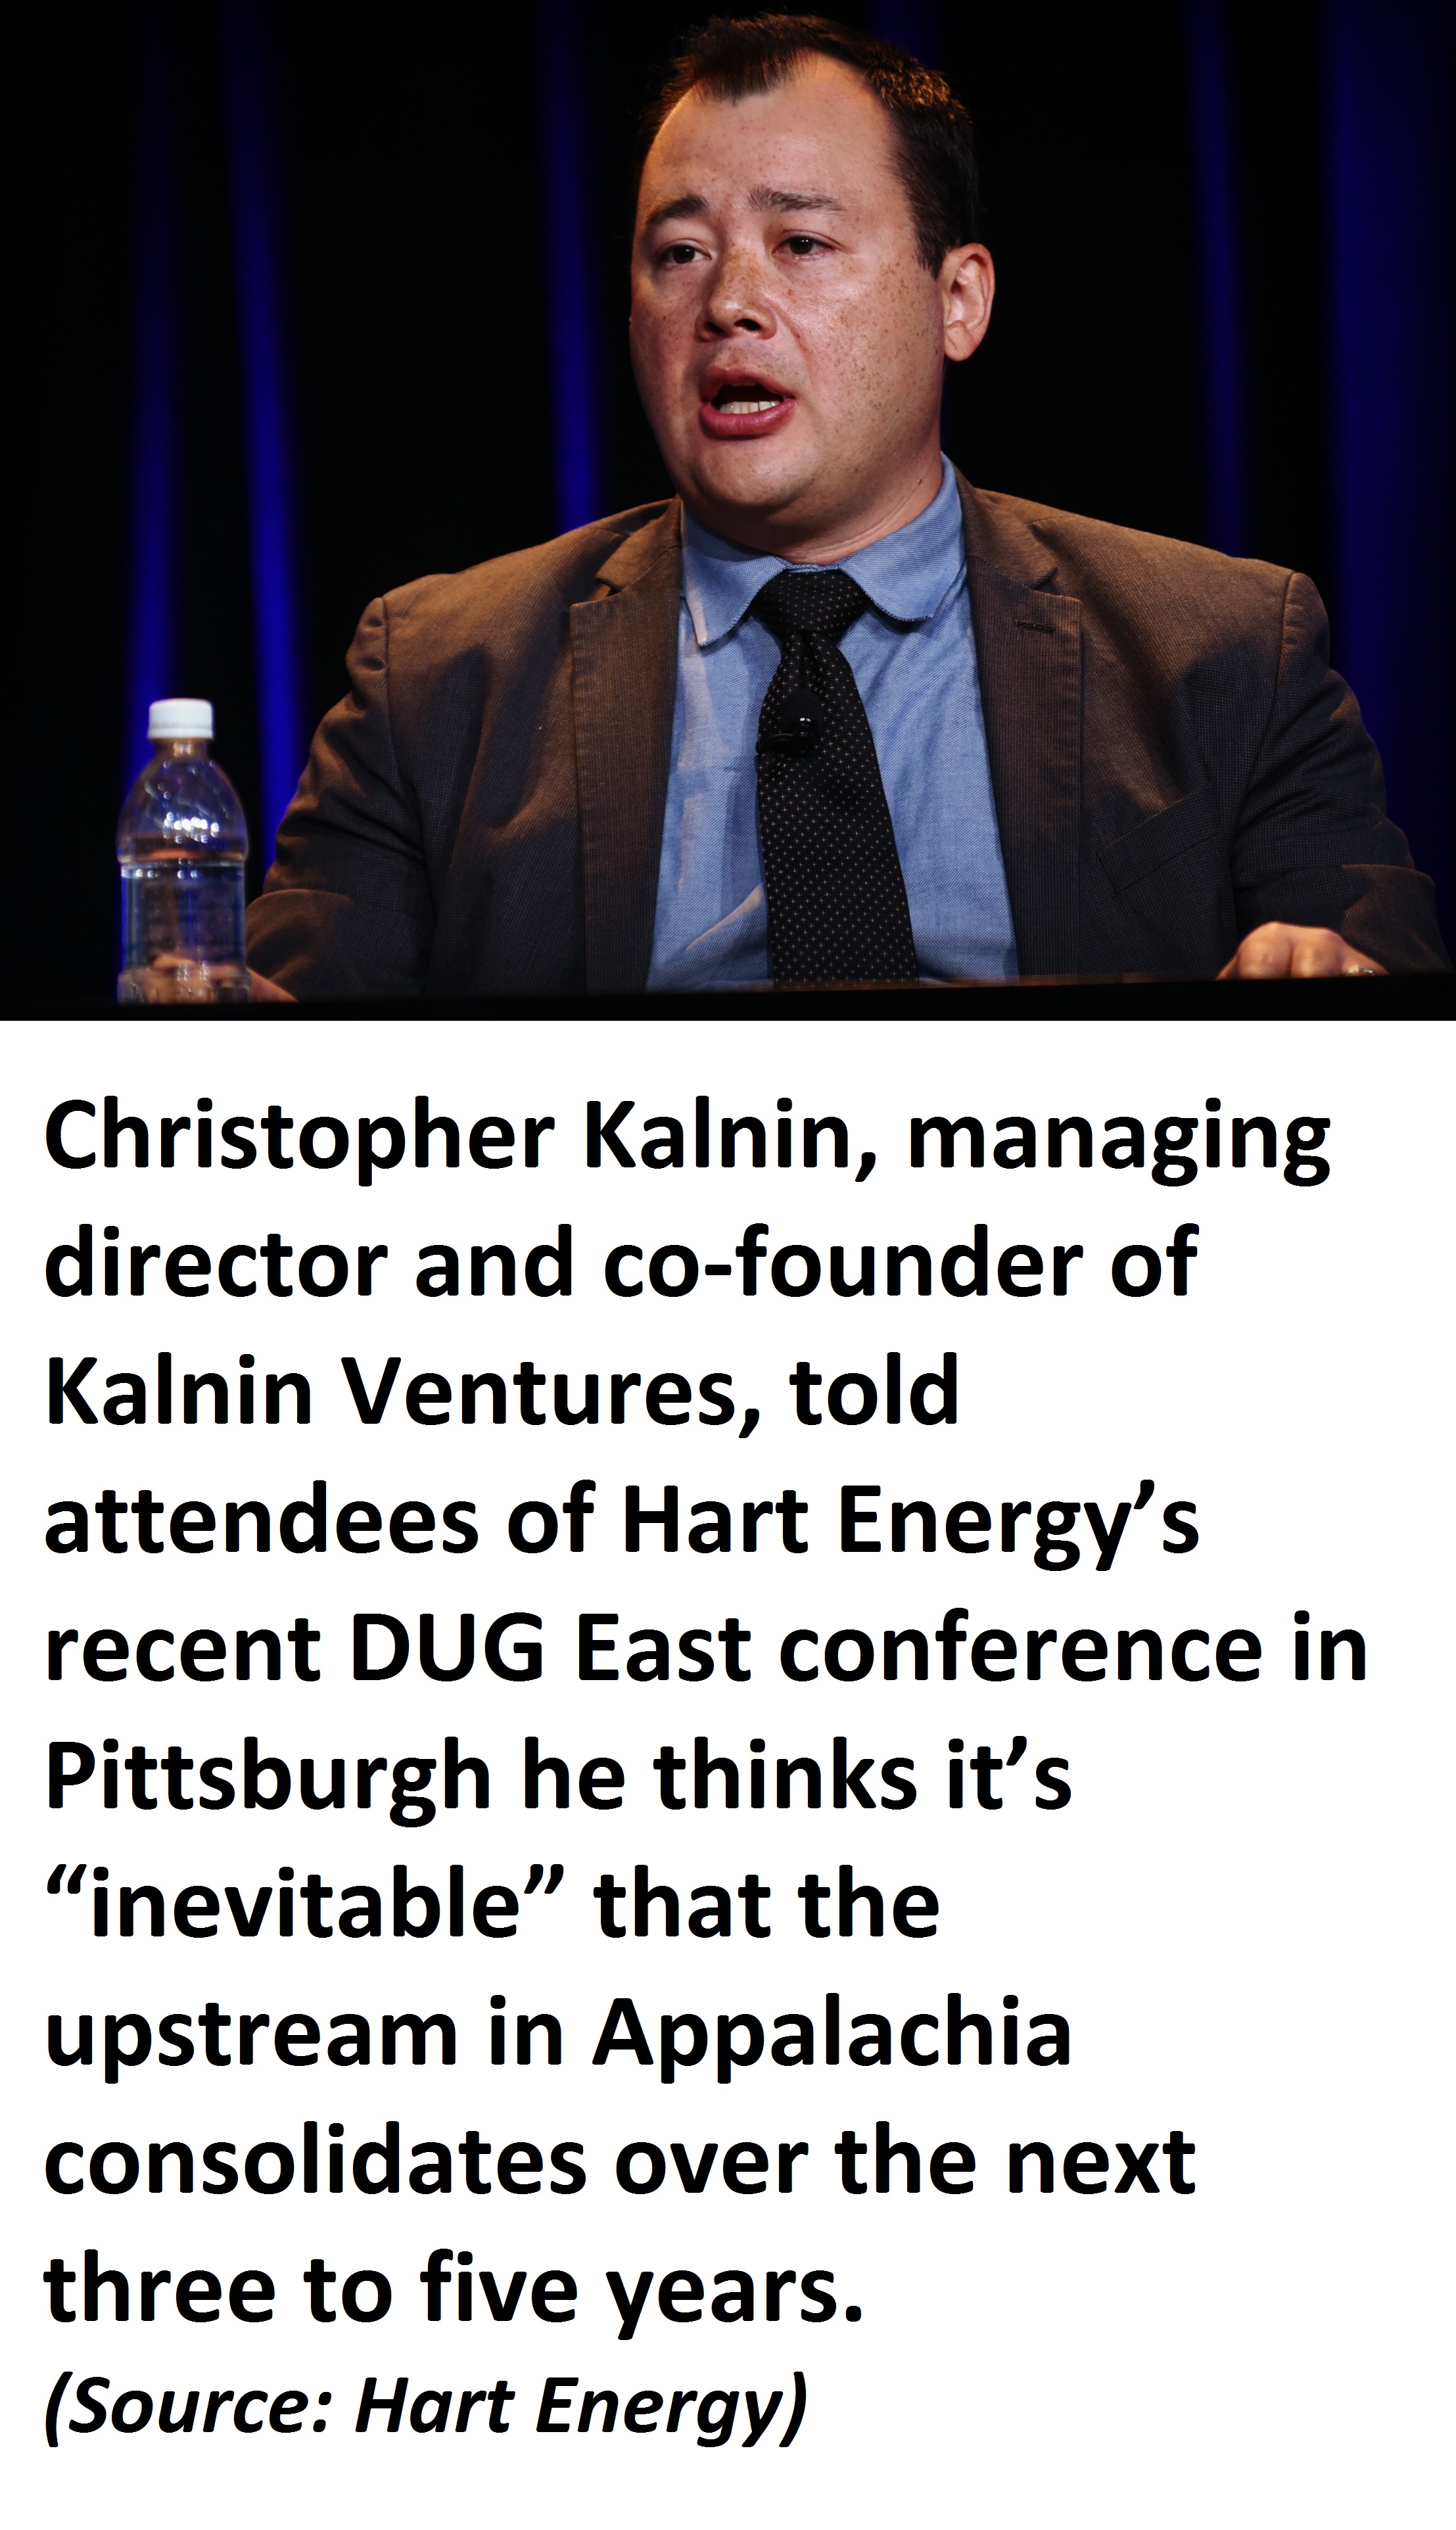 Christopher Kalnin, managing director and co-founder of Kalnin Ventures.